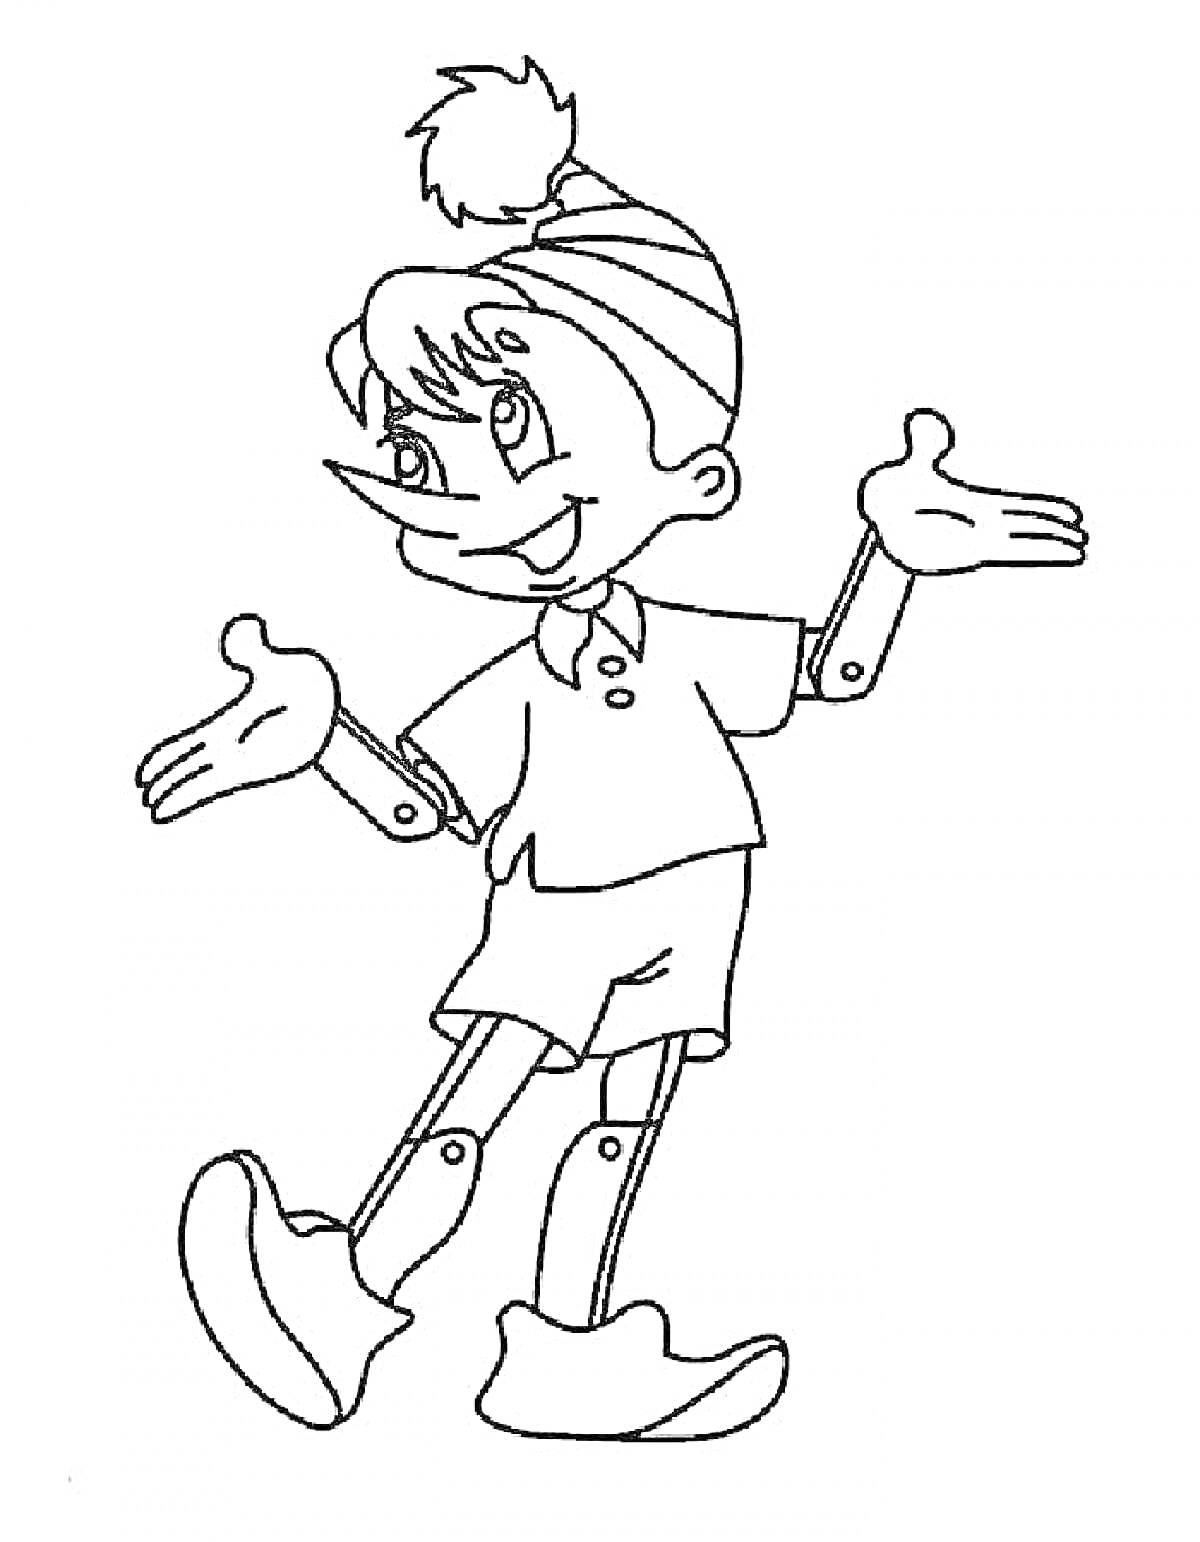 Мальчик с круглой шапкой с помпоном, в коротких штанах и ботинках, с подвижными суставами на локтях и коленях